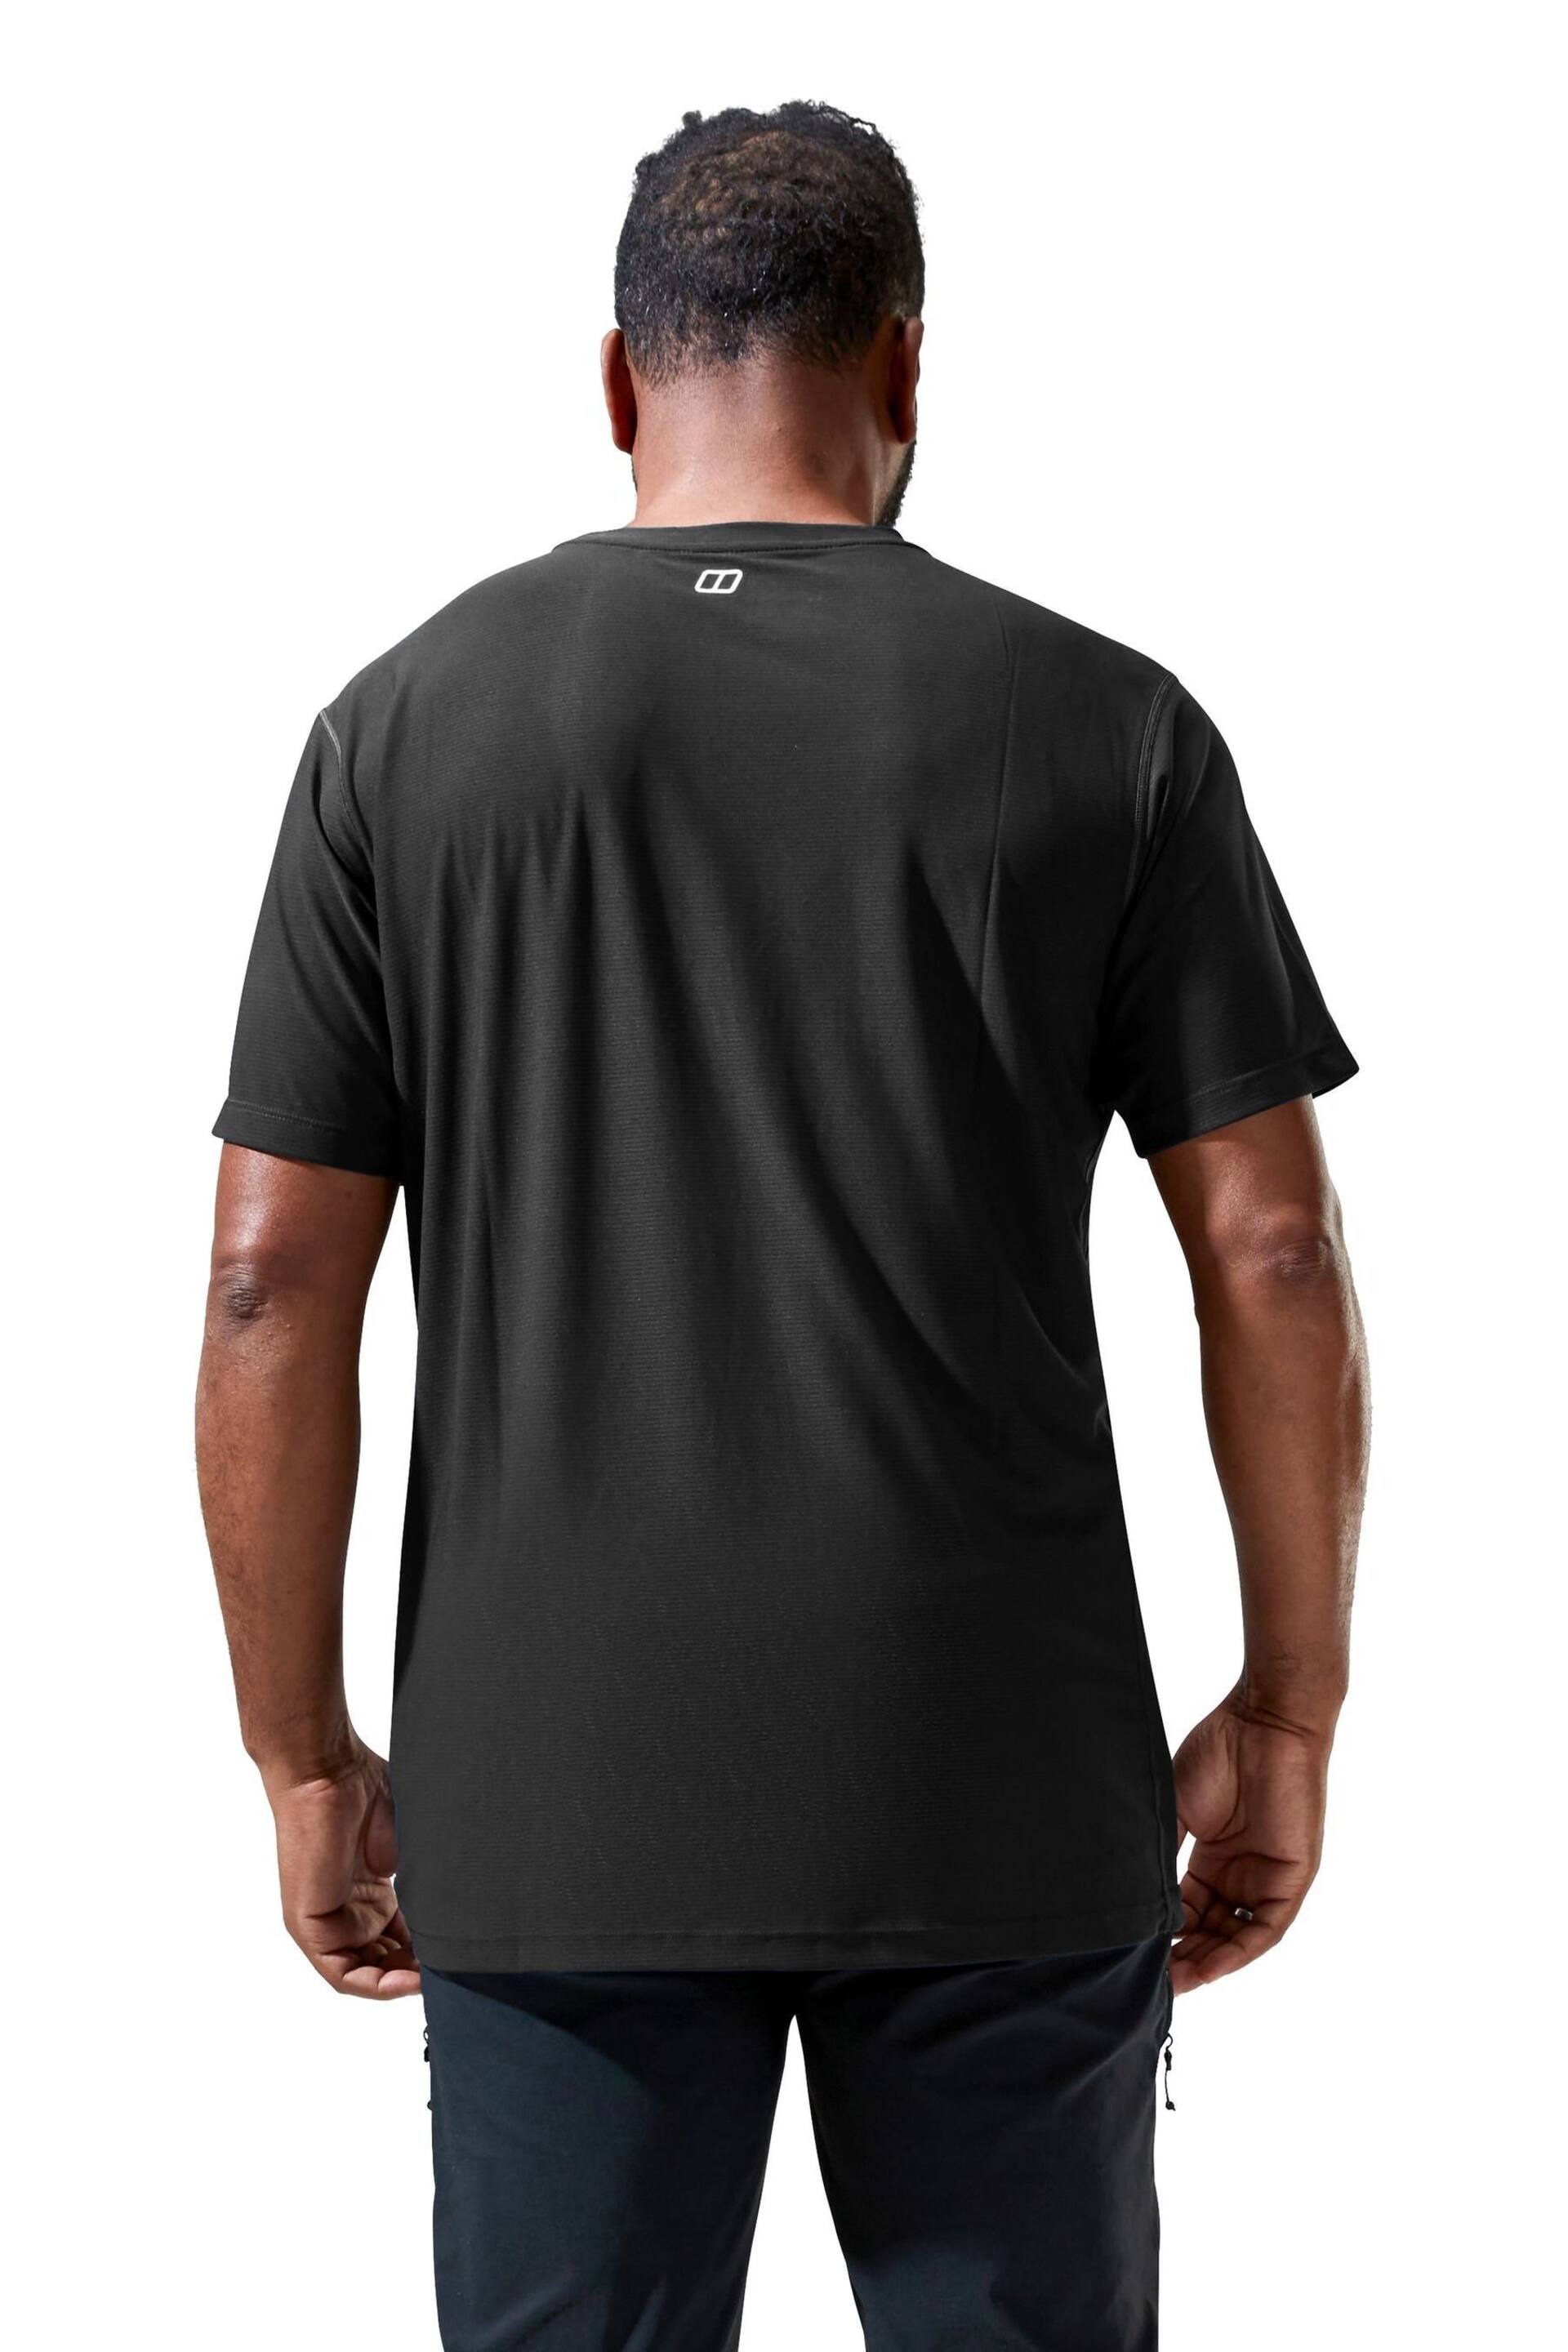 Berghaus 24/7 Short Sleeve Tech T-Shirt - Image 2 of 15